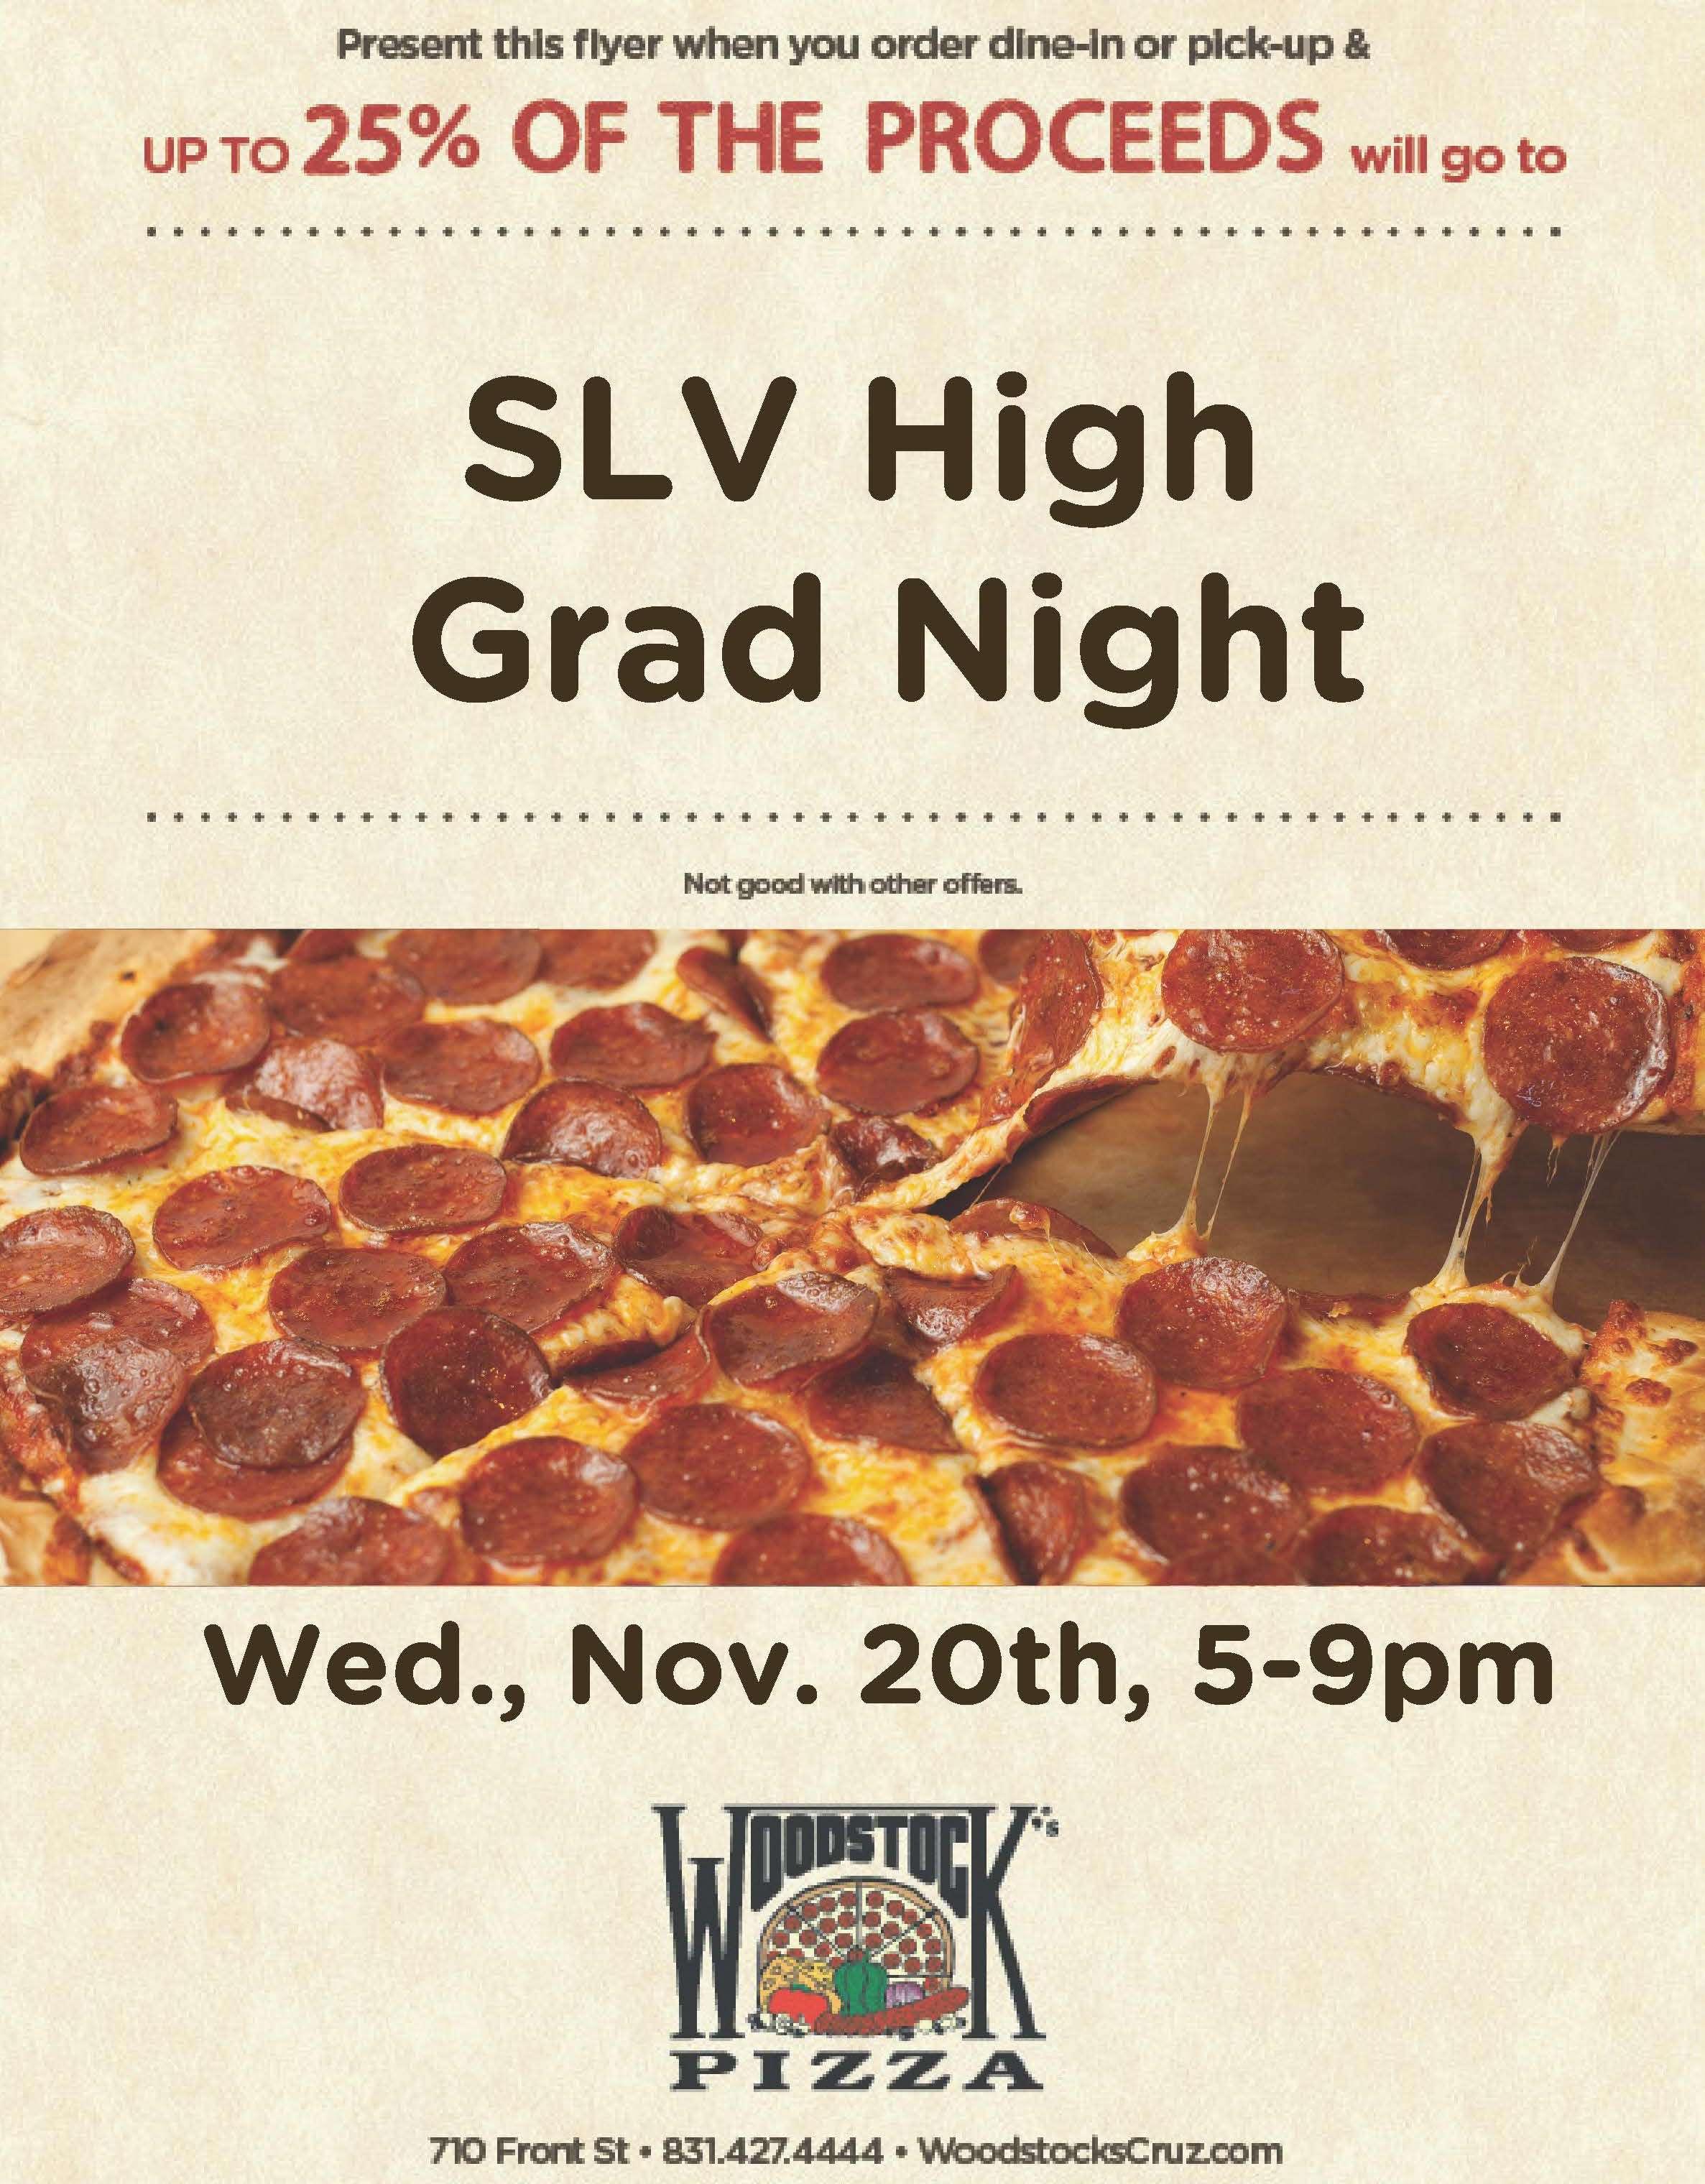 slv high grad night fundraiser at woodstock pizza Nov 20, 5-9 pm